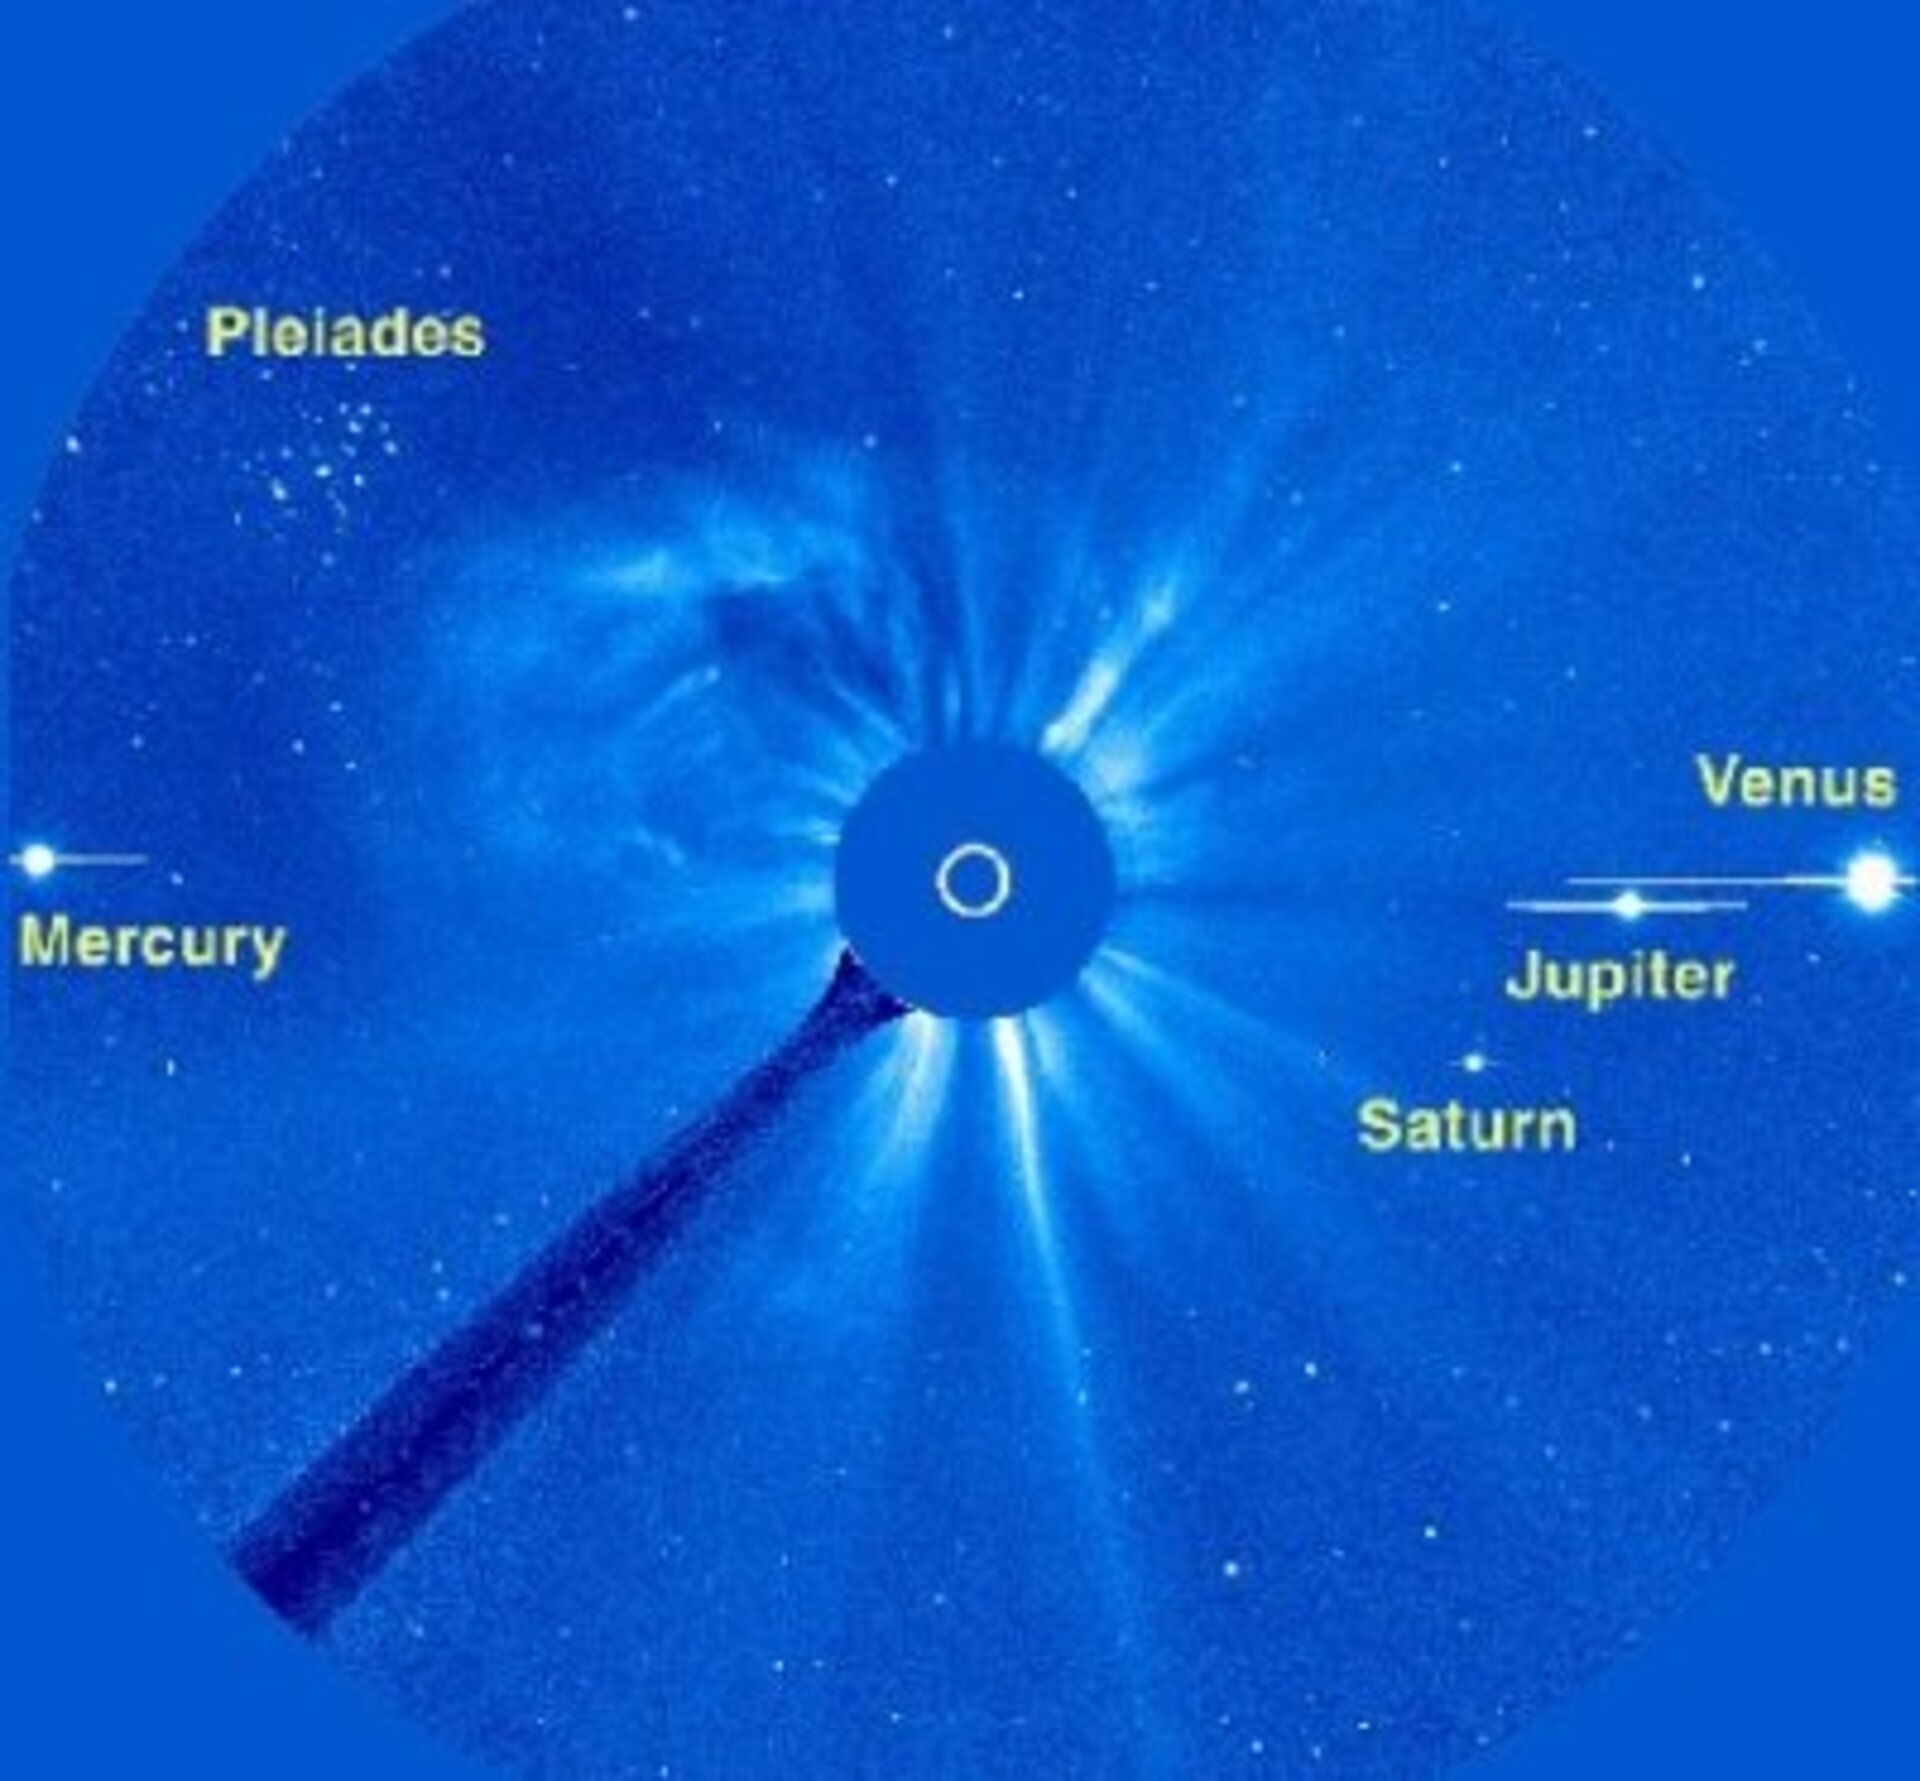 SOHO sees Jupiter, Saturn, Mercury and Venus simultaneously.